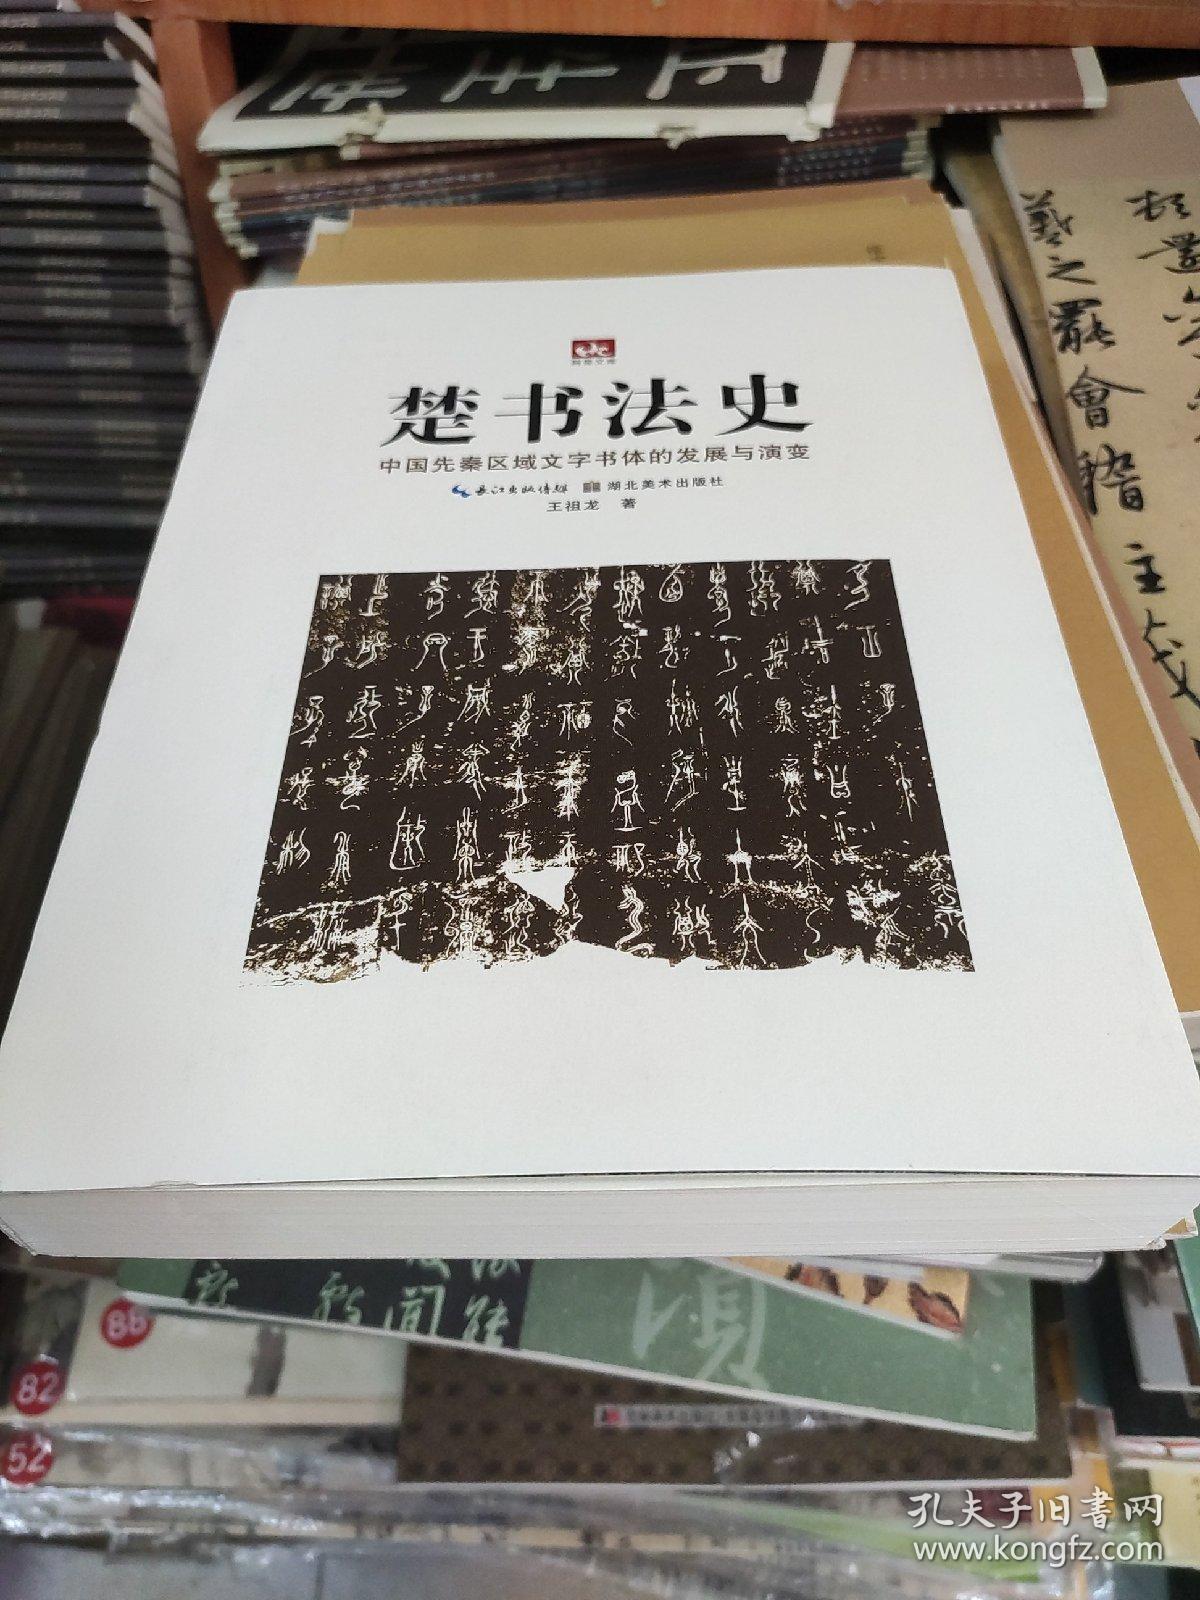 荆楚文库·楚书法史：中国先秦区域文字书体的发展与演变